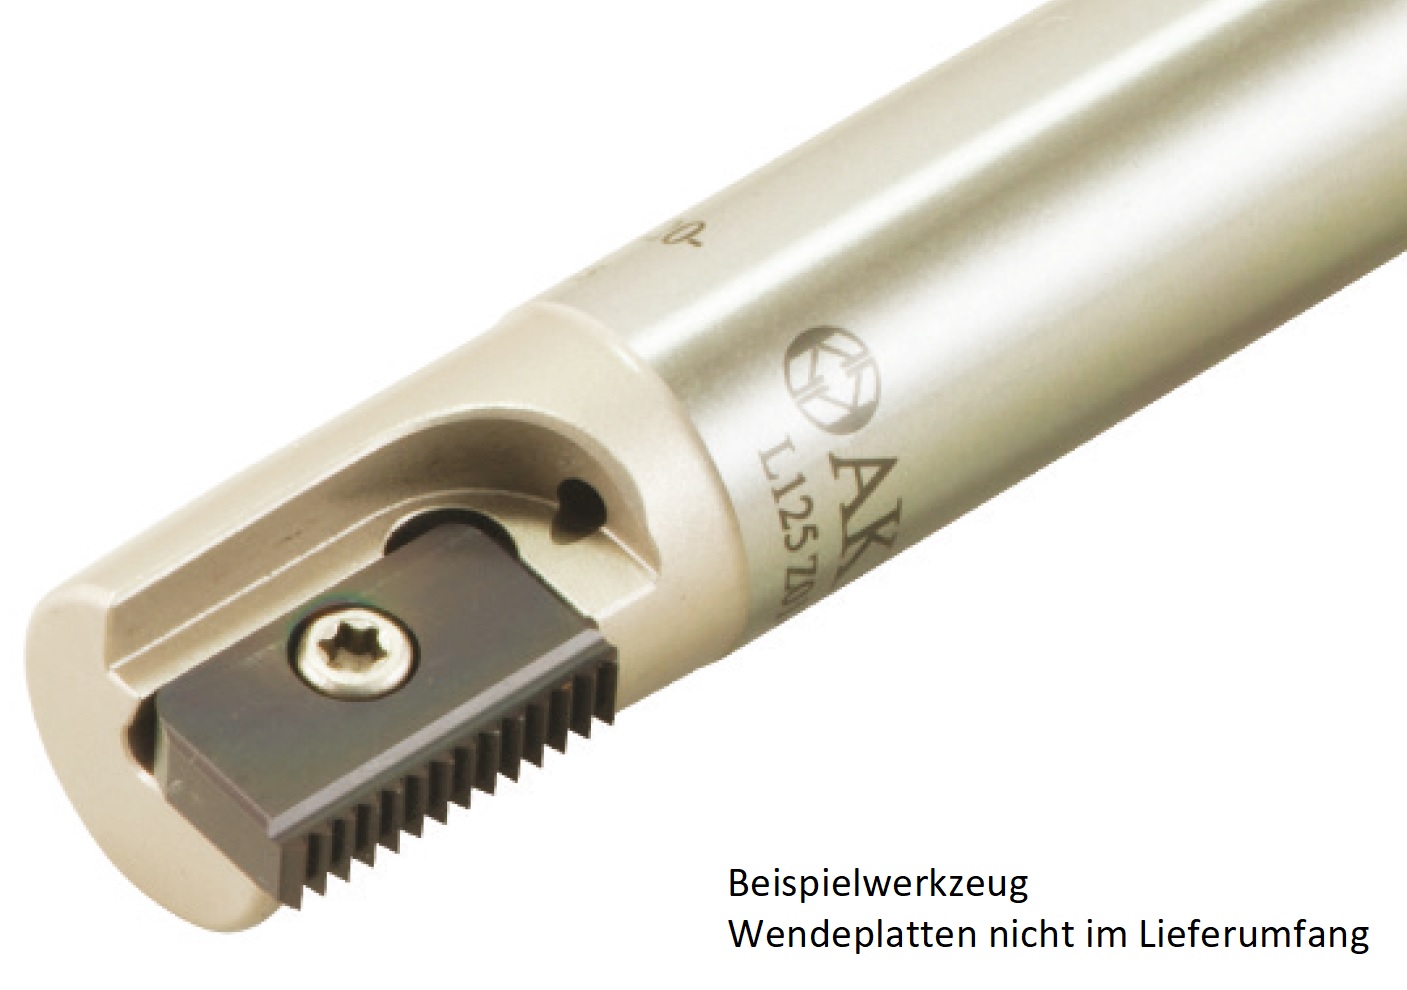 AKKO-Gewindefräser ø 18 mm, kompatibel mit CPT-Gewinde-Fräsplatte C21, Gesamtlänge = 100, mit Innenkühlung
